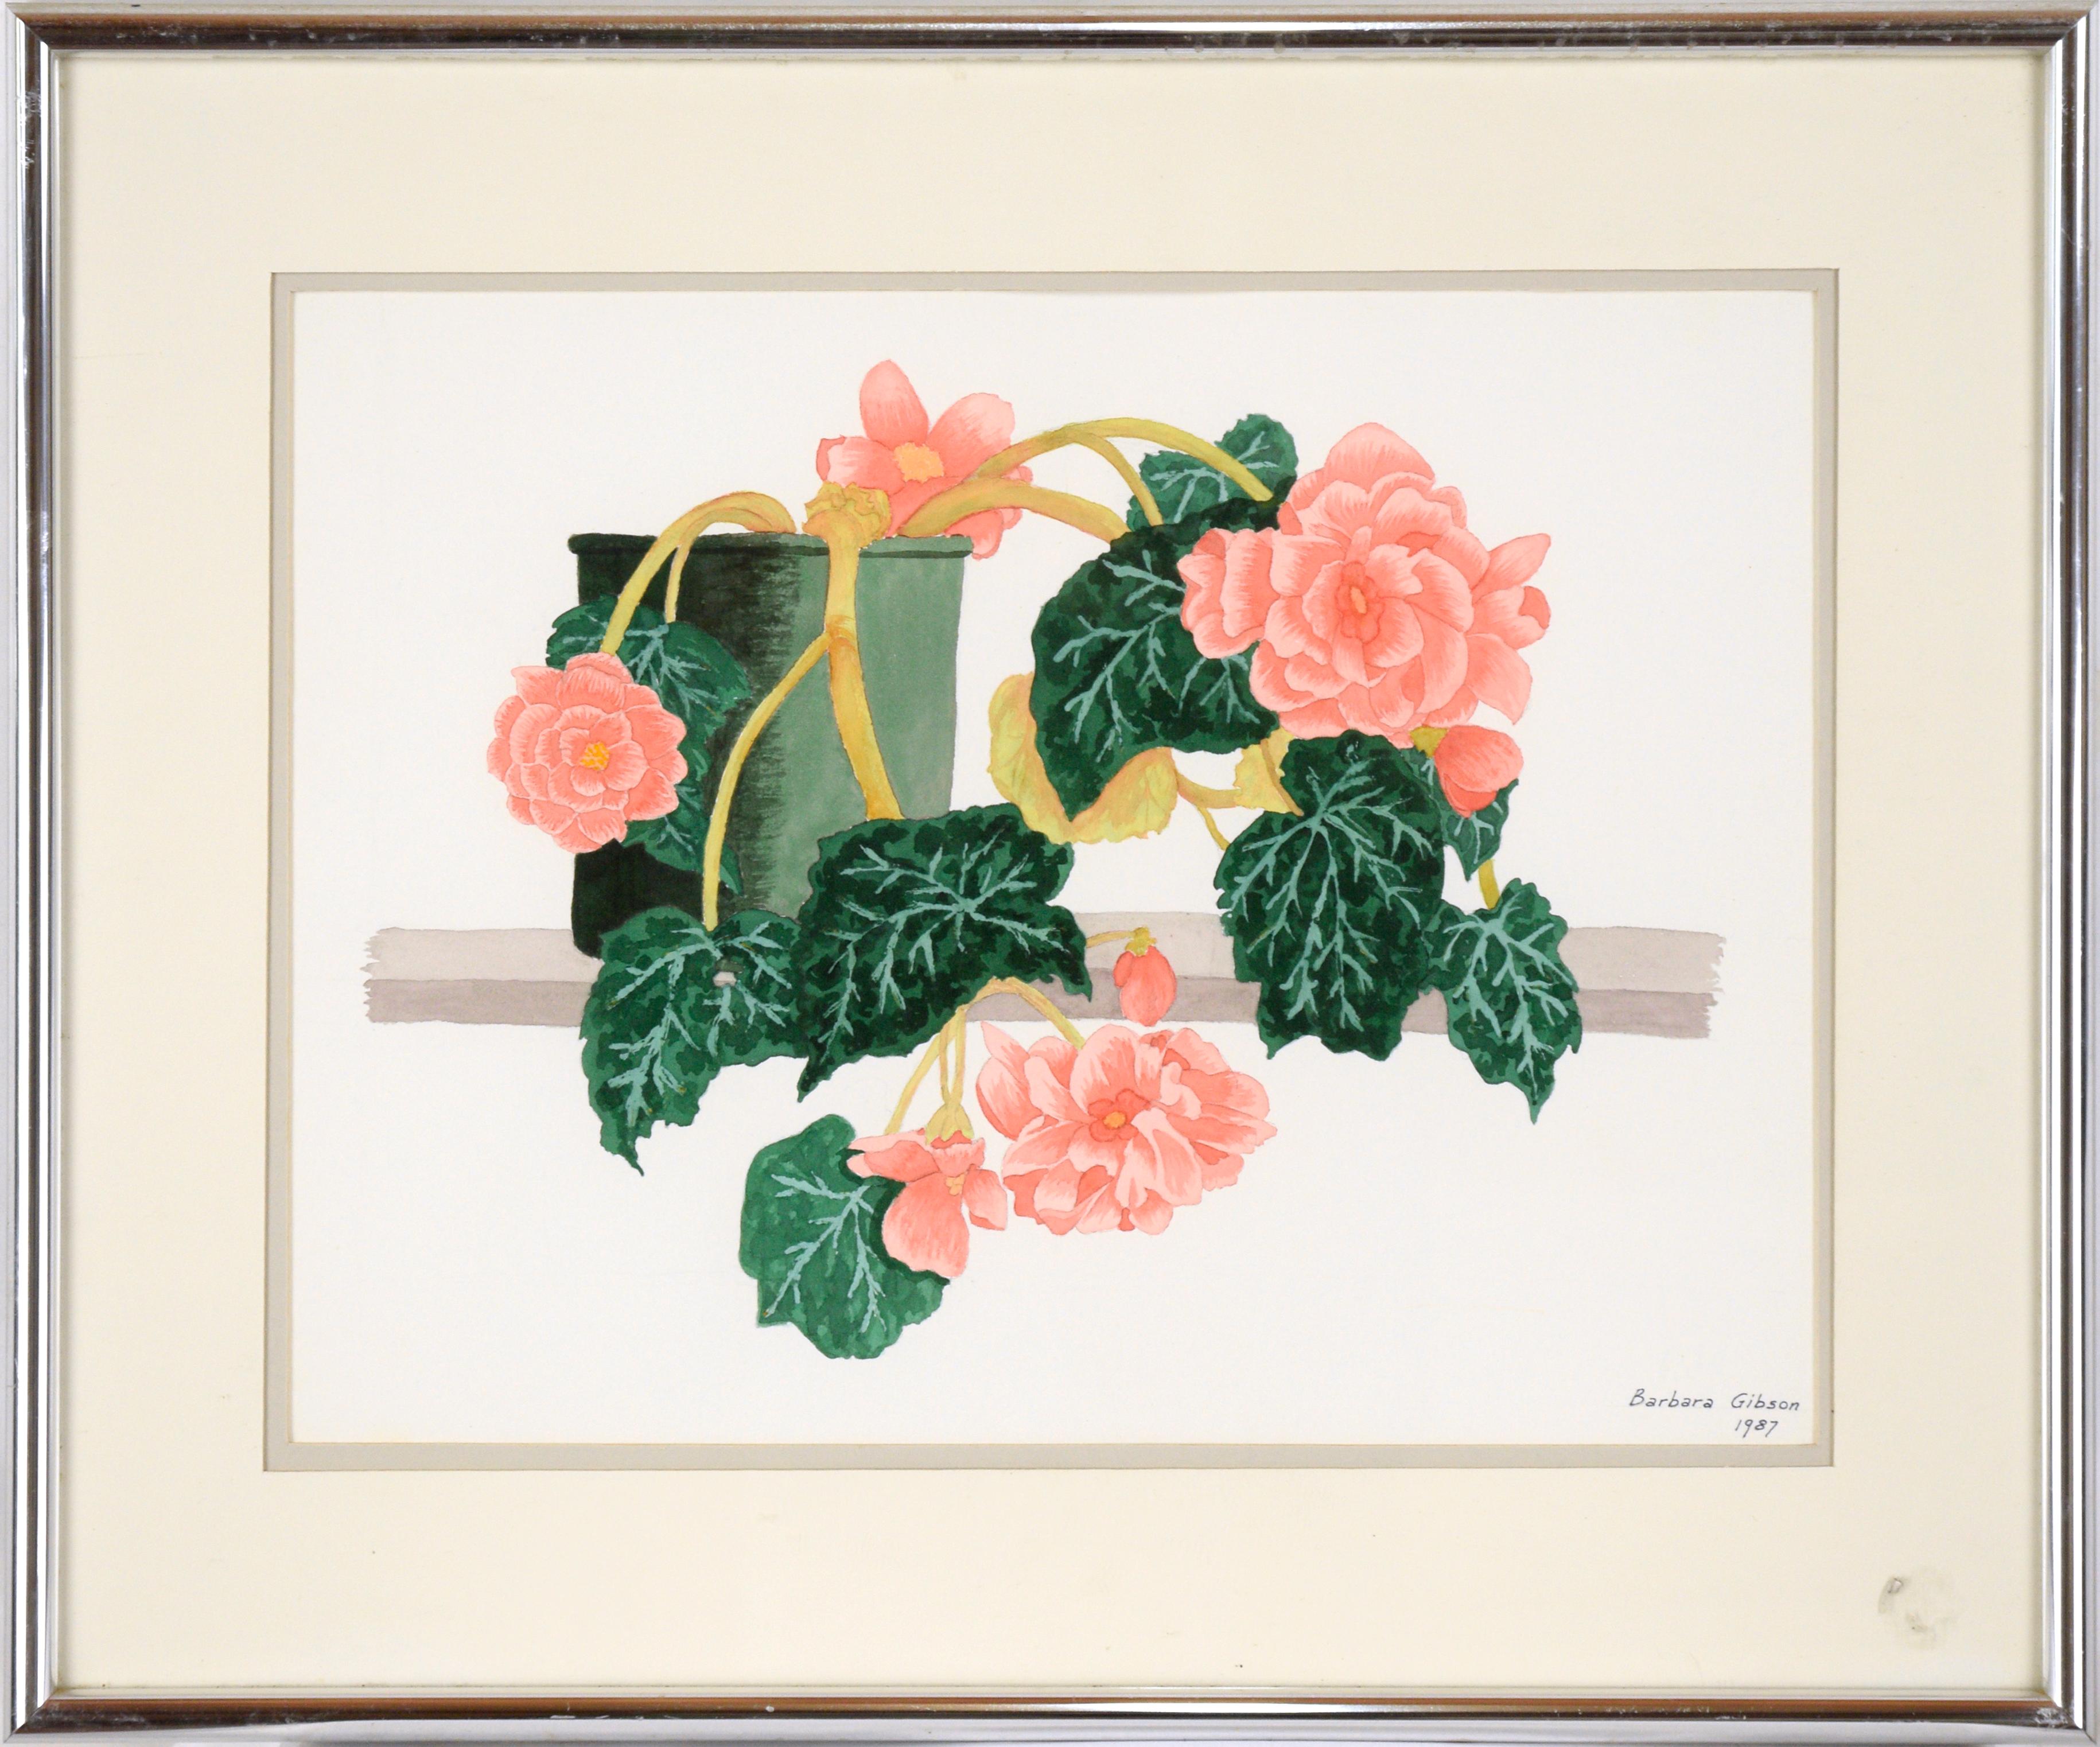 Begonias roses - Étude florale à l'aquarelle sur papier épais